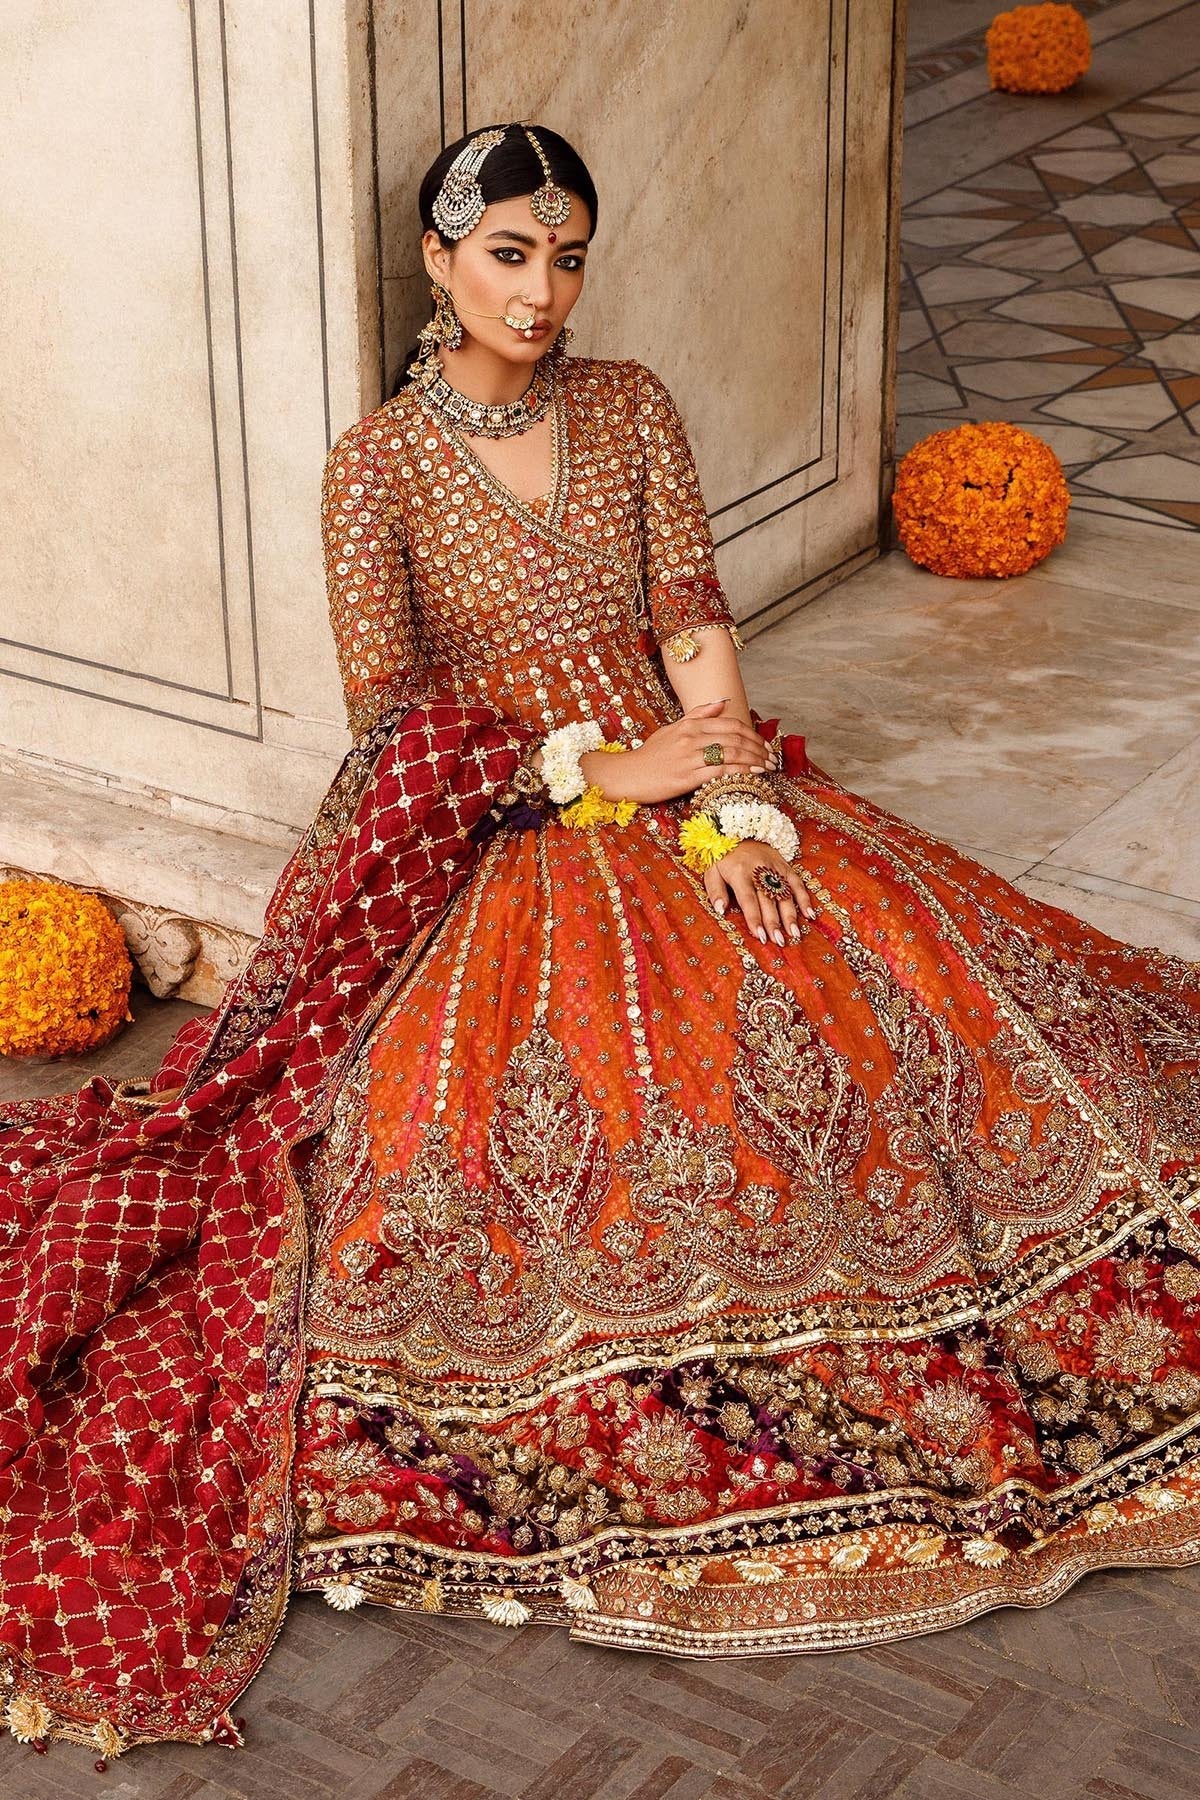 Golden Wedding Orange Bridal Lehenga Choli Alia Bhatt Designer - Etsy |  Indian bride outfits, Photo poses for couples, Bridal poses